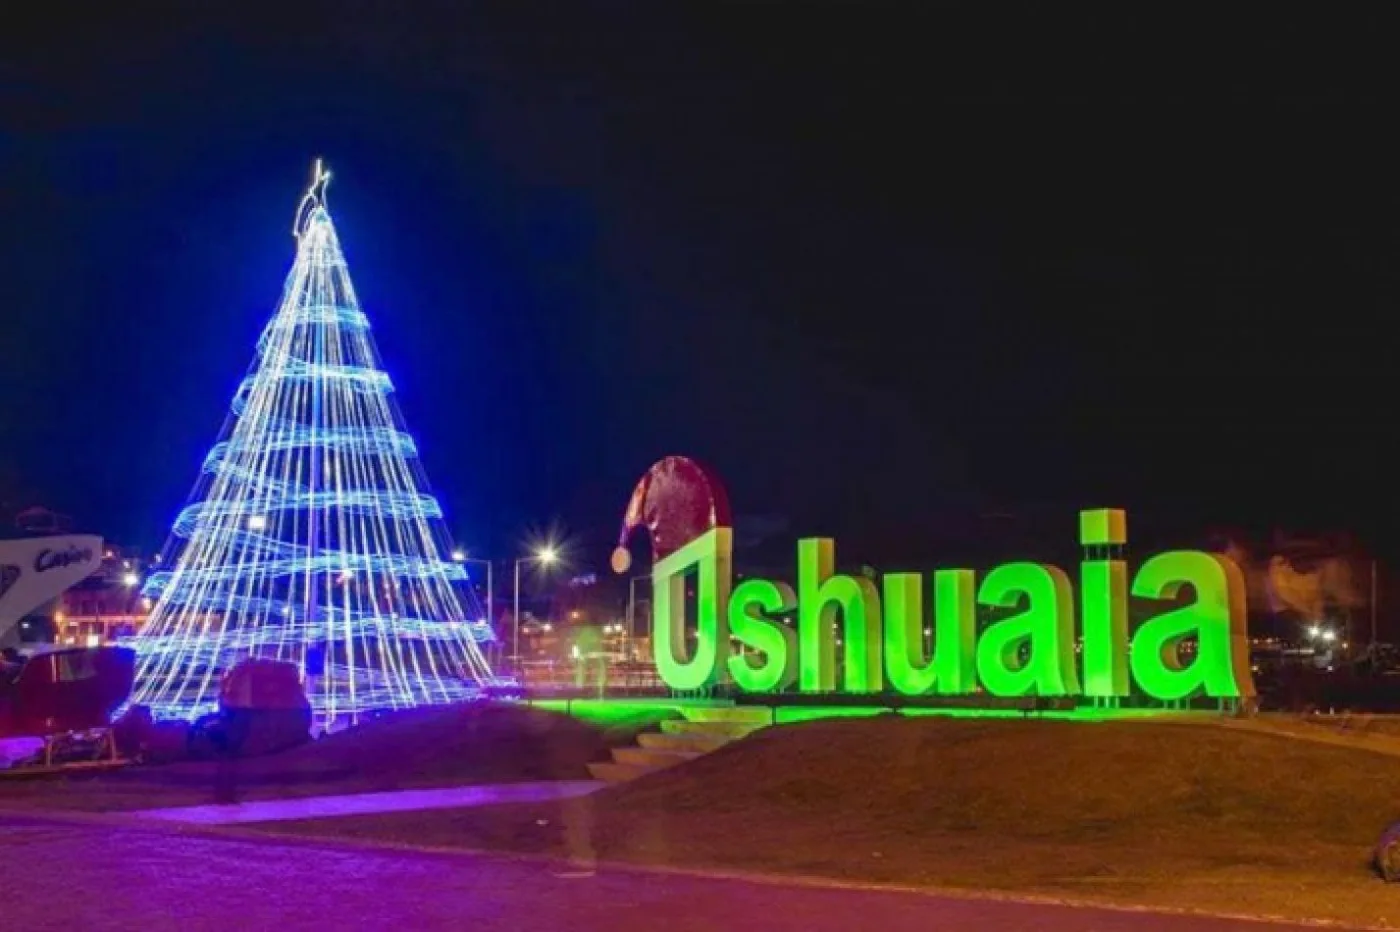 “Ushuaia festeja”: Gran festejo en el encendido del árbol navideño